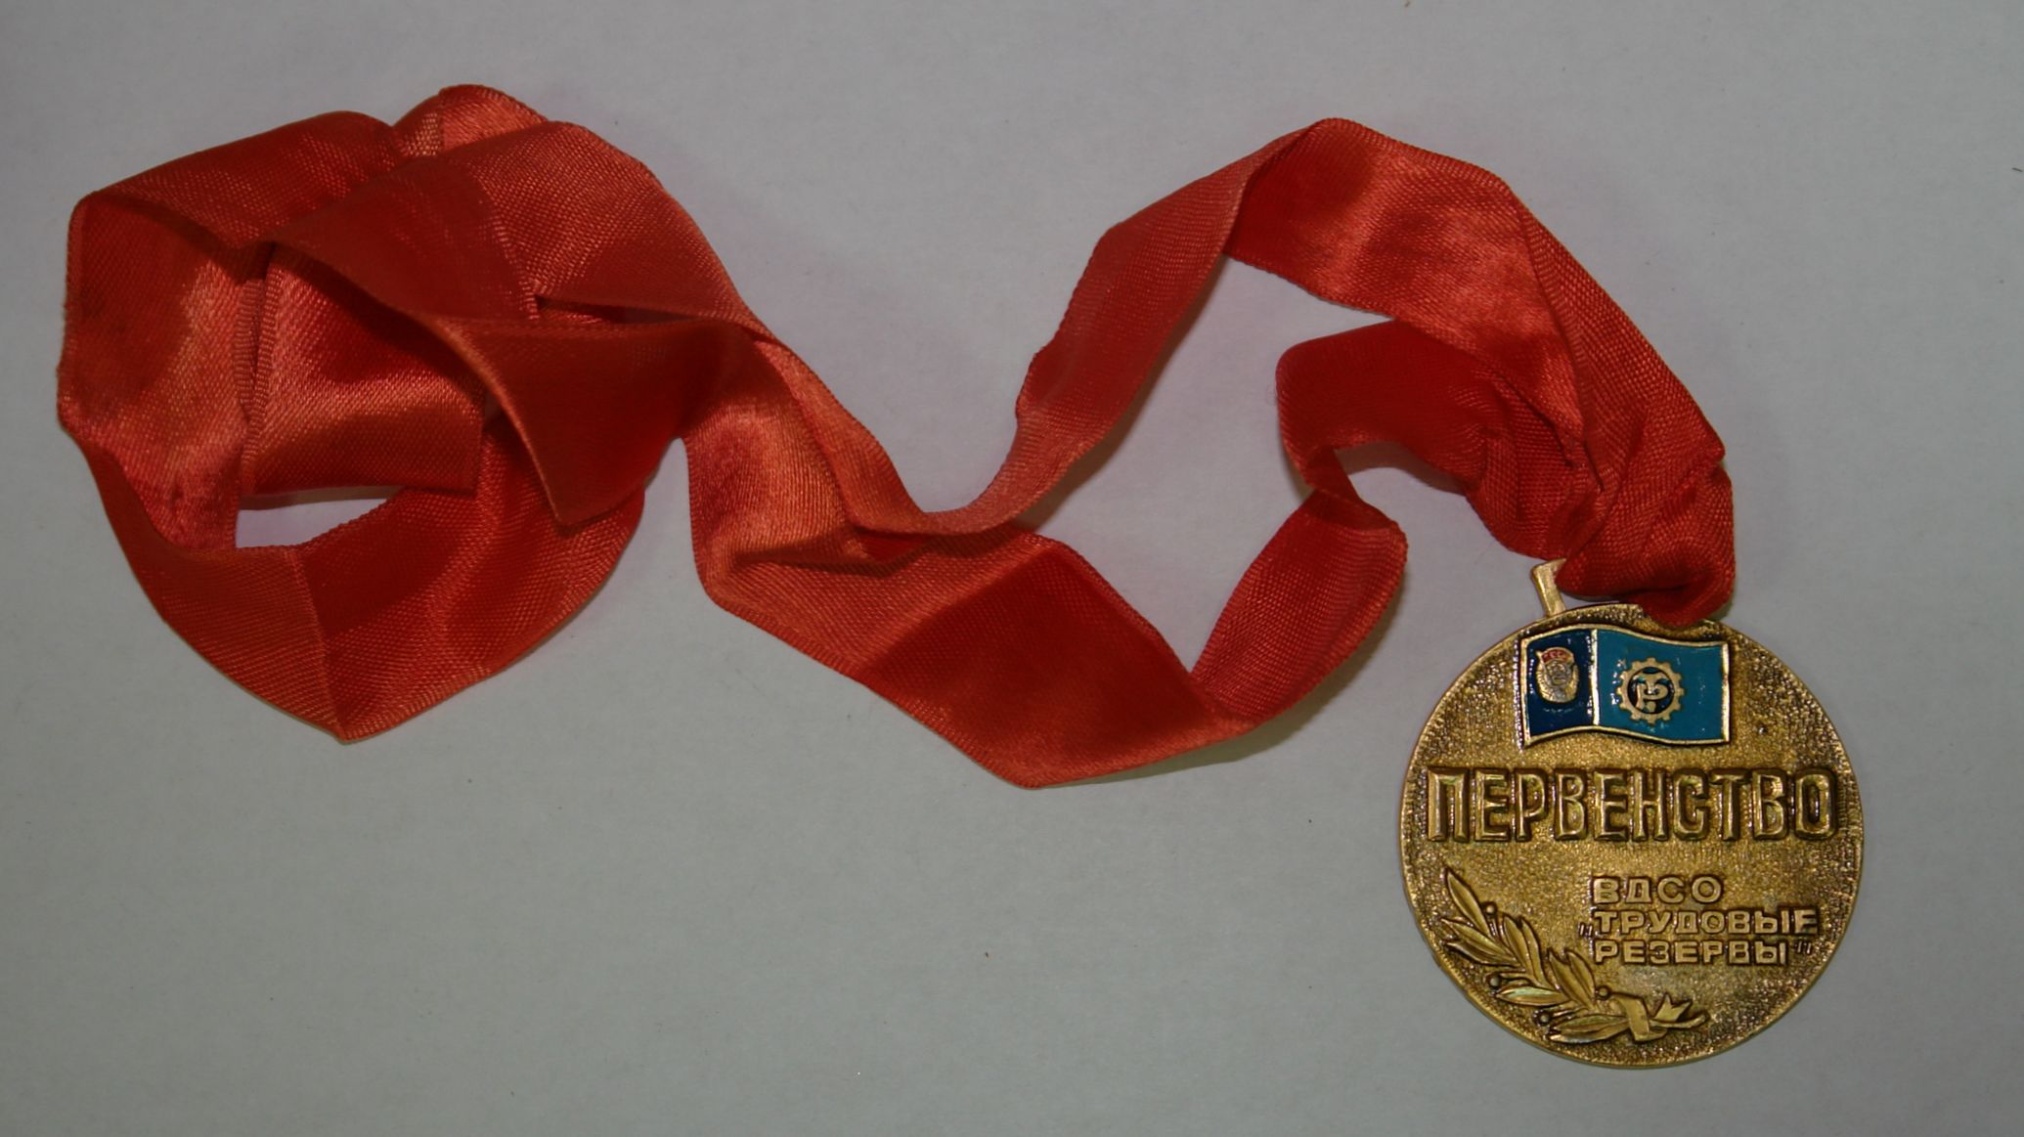 Медаль «Первенство ВДСО «Трудовые резервы». 1980-е гг.